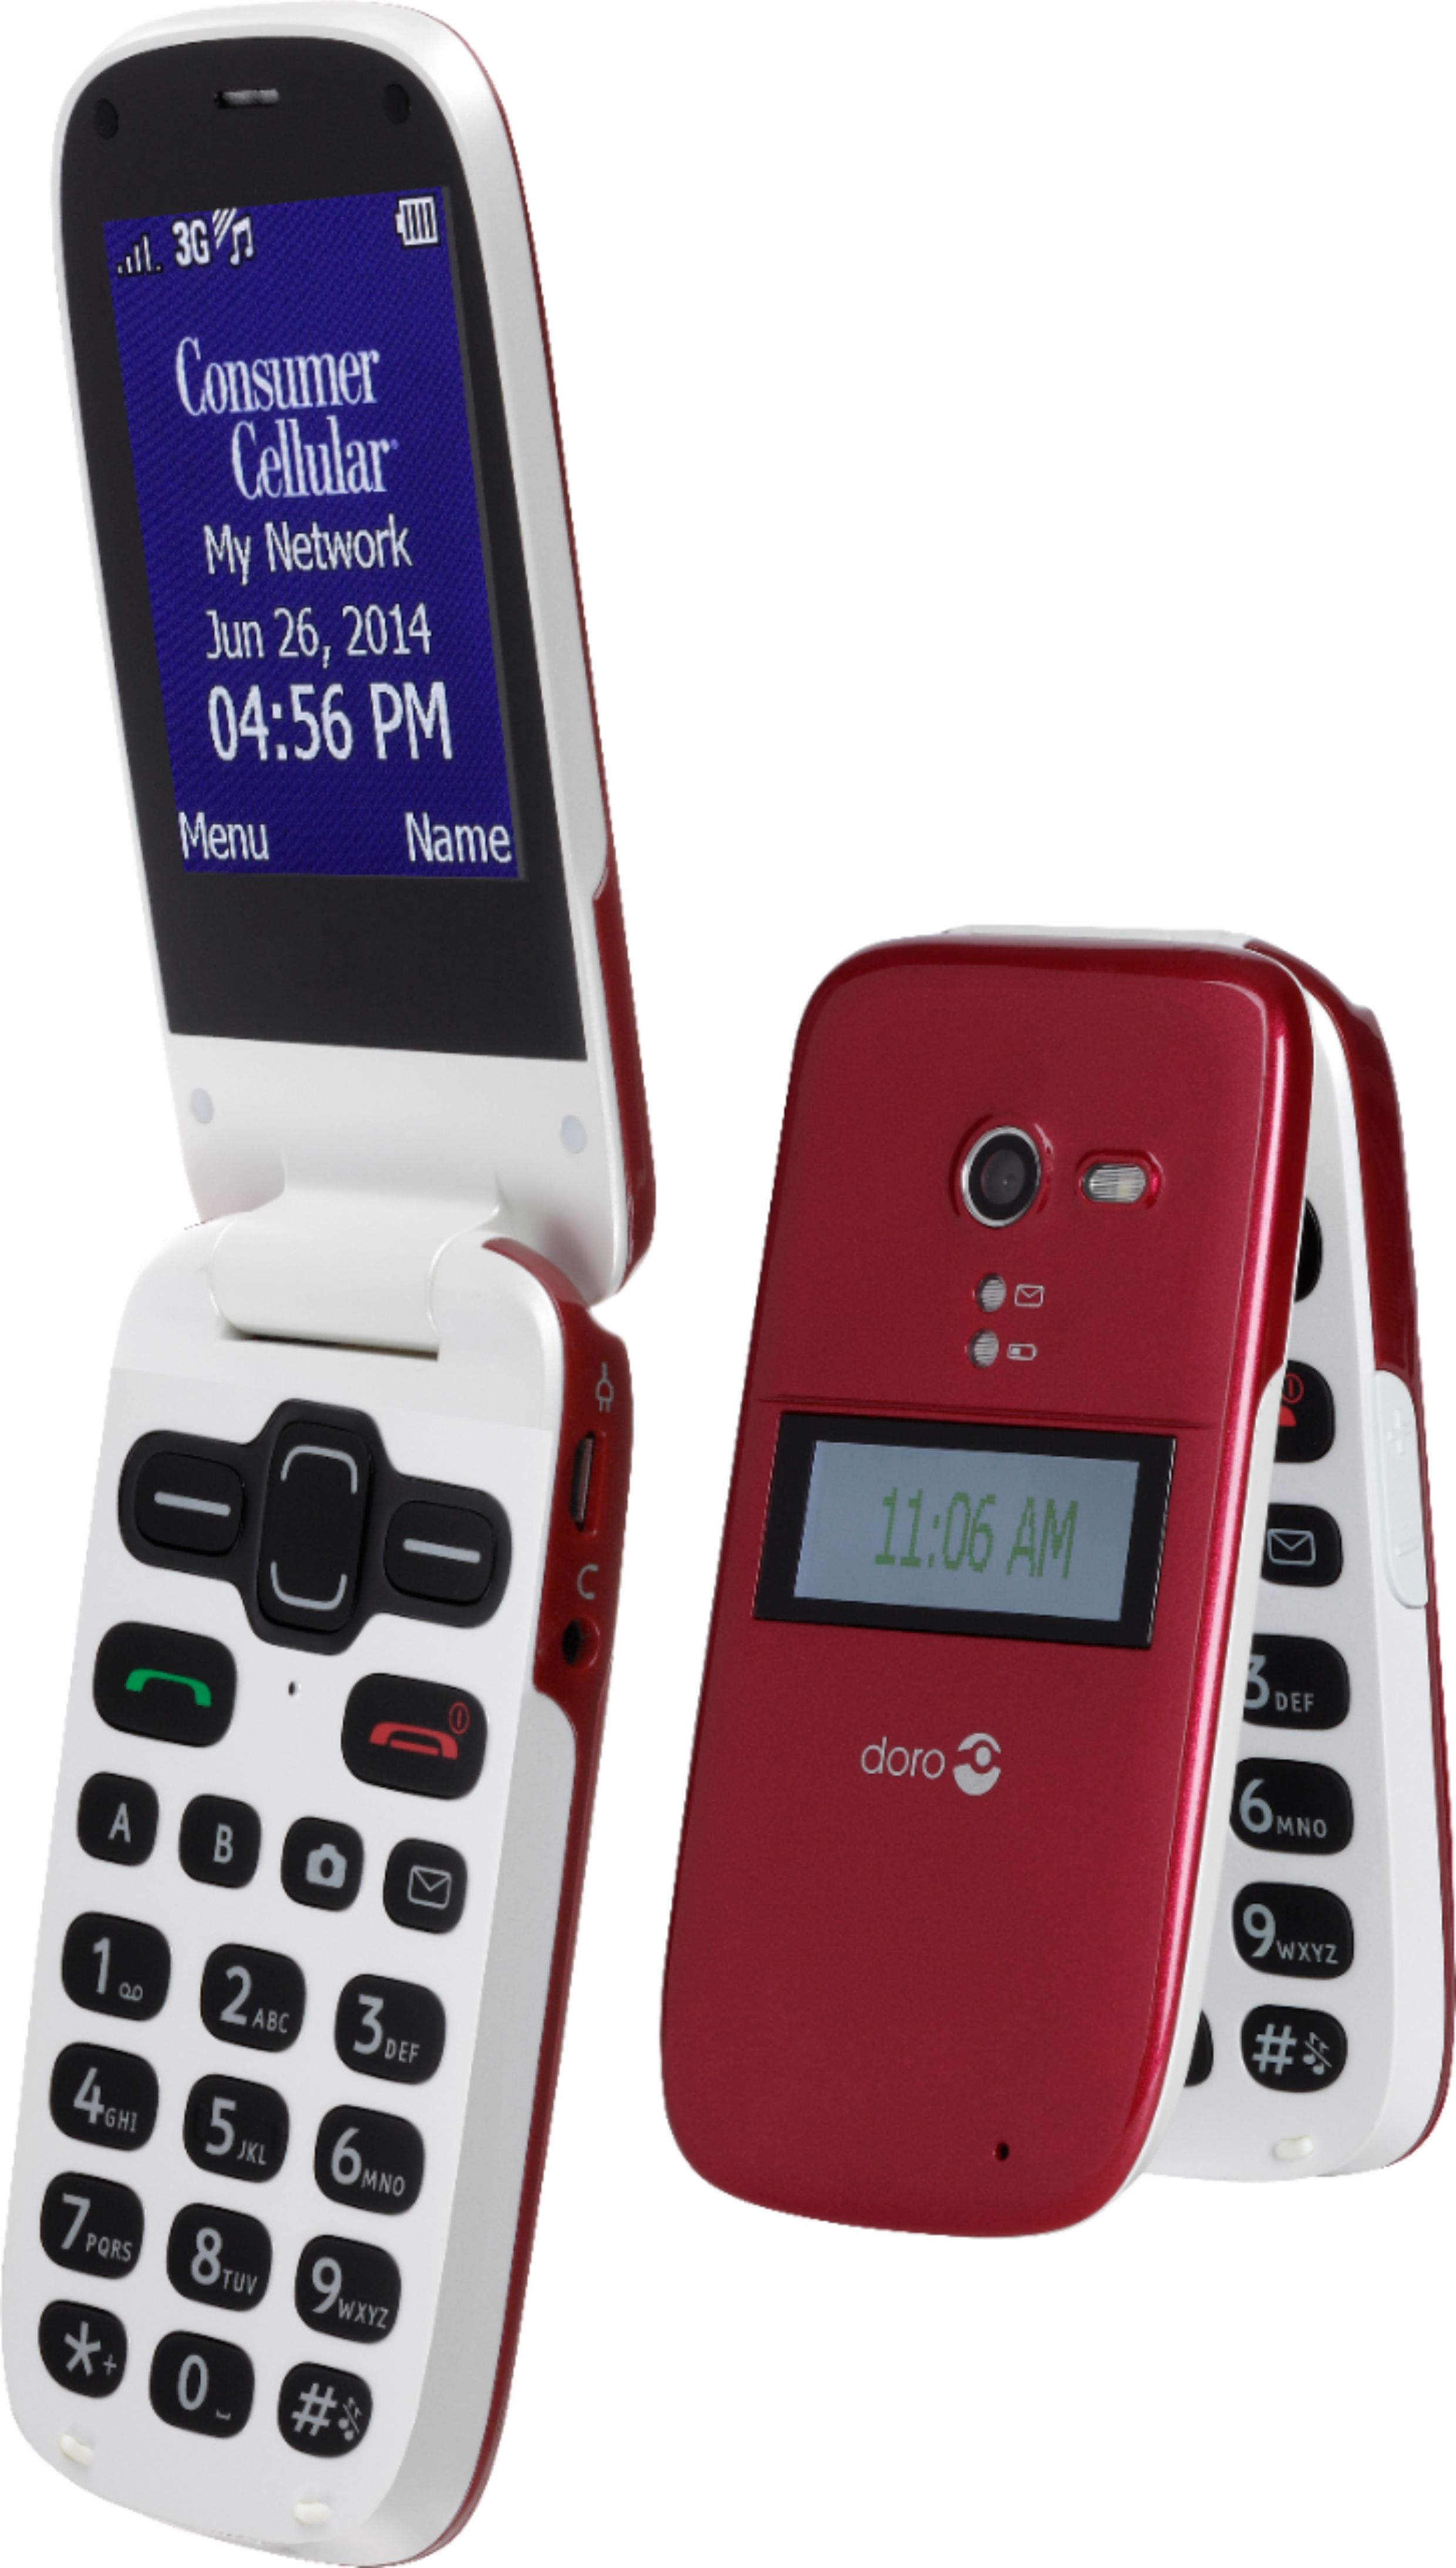 Best Buy Doro Phoneeasy 626 Cell Phone Burgundy Consumer Cellular Doro 626 Burgundy